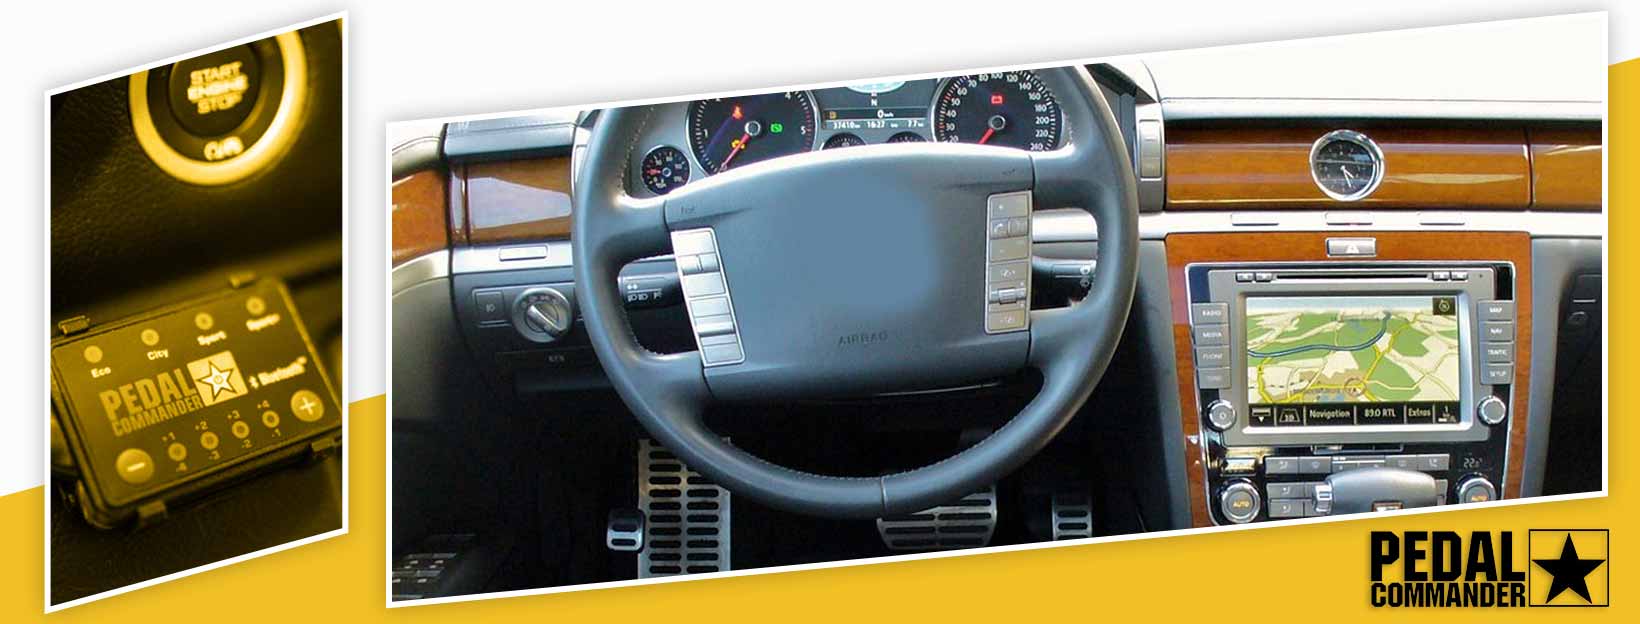 Pedal Commander for Volkswagen Phaeton - interior